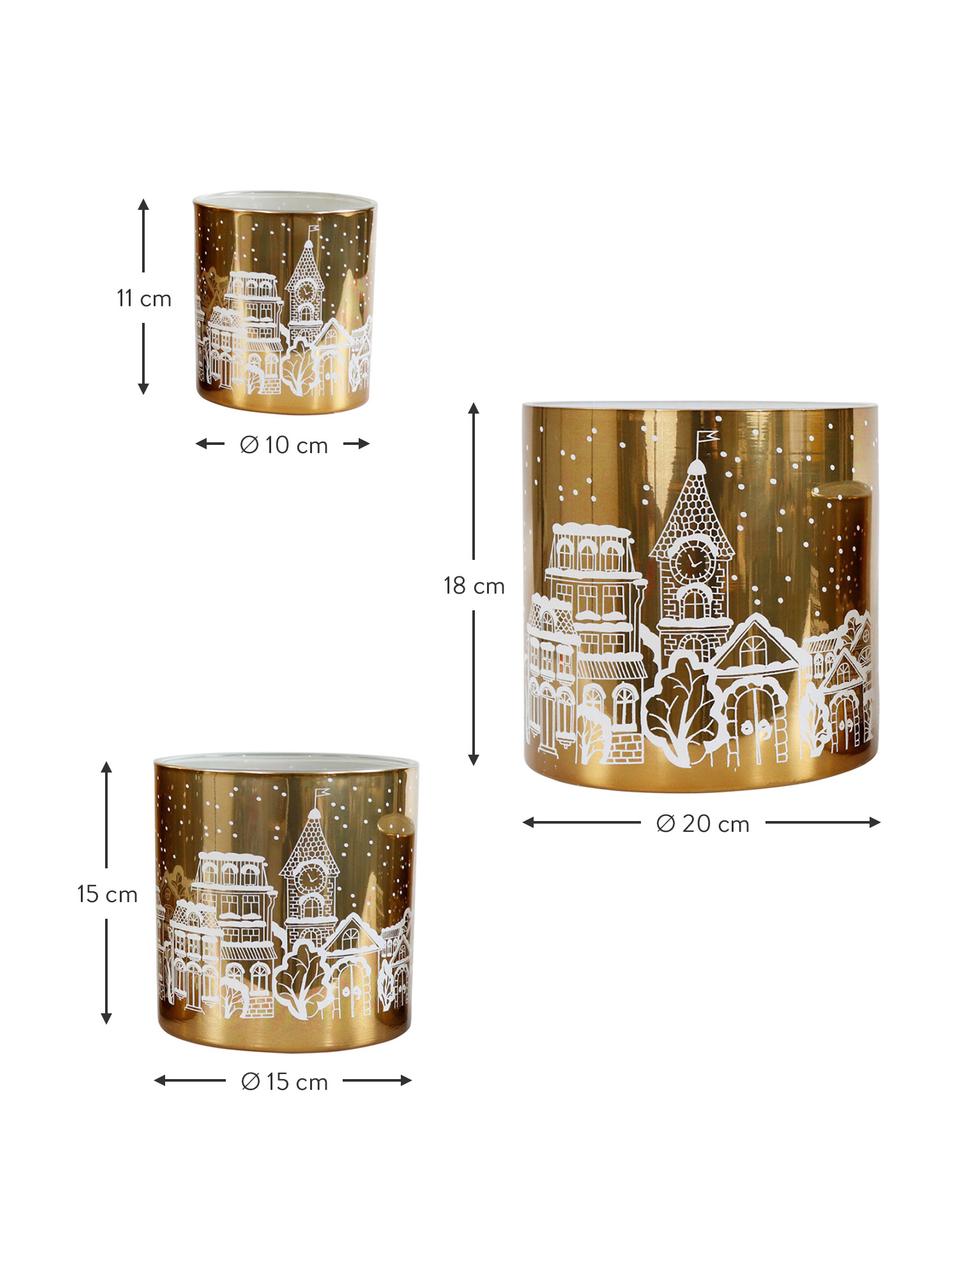 Windlichter-Set Winter Wonderland, 3er-Set, Glas, Goldfarben, Weiss, Set mit verschiedenen Grössen